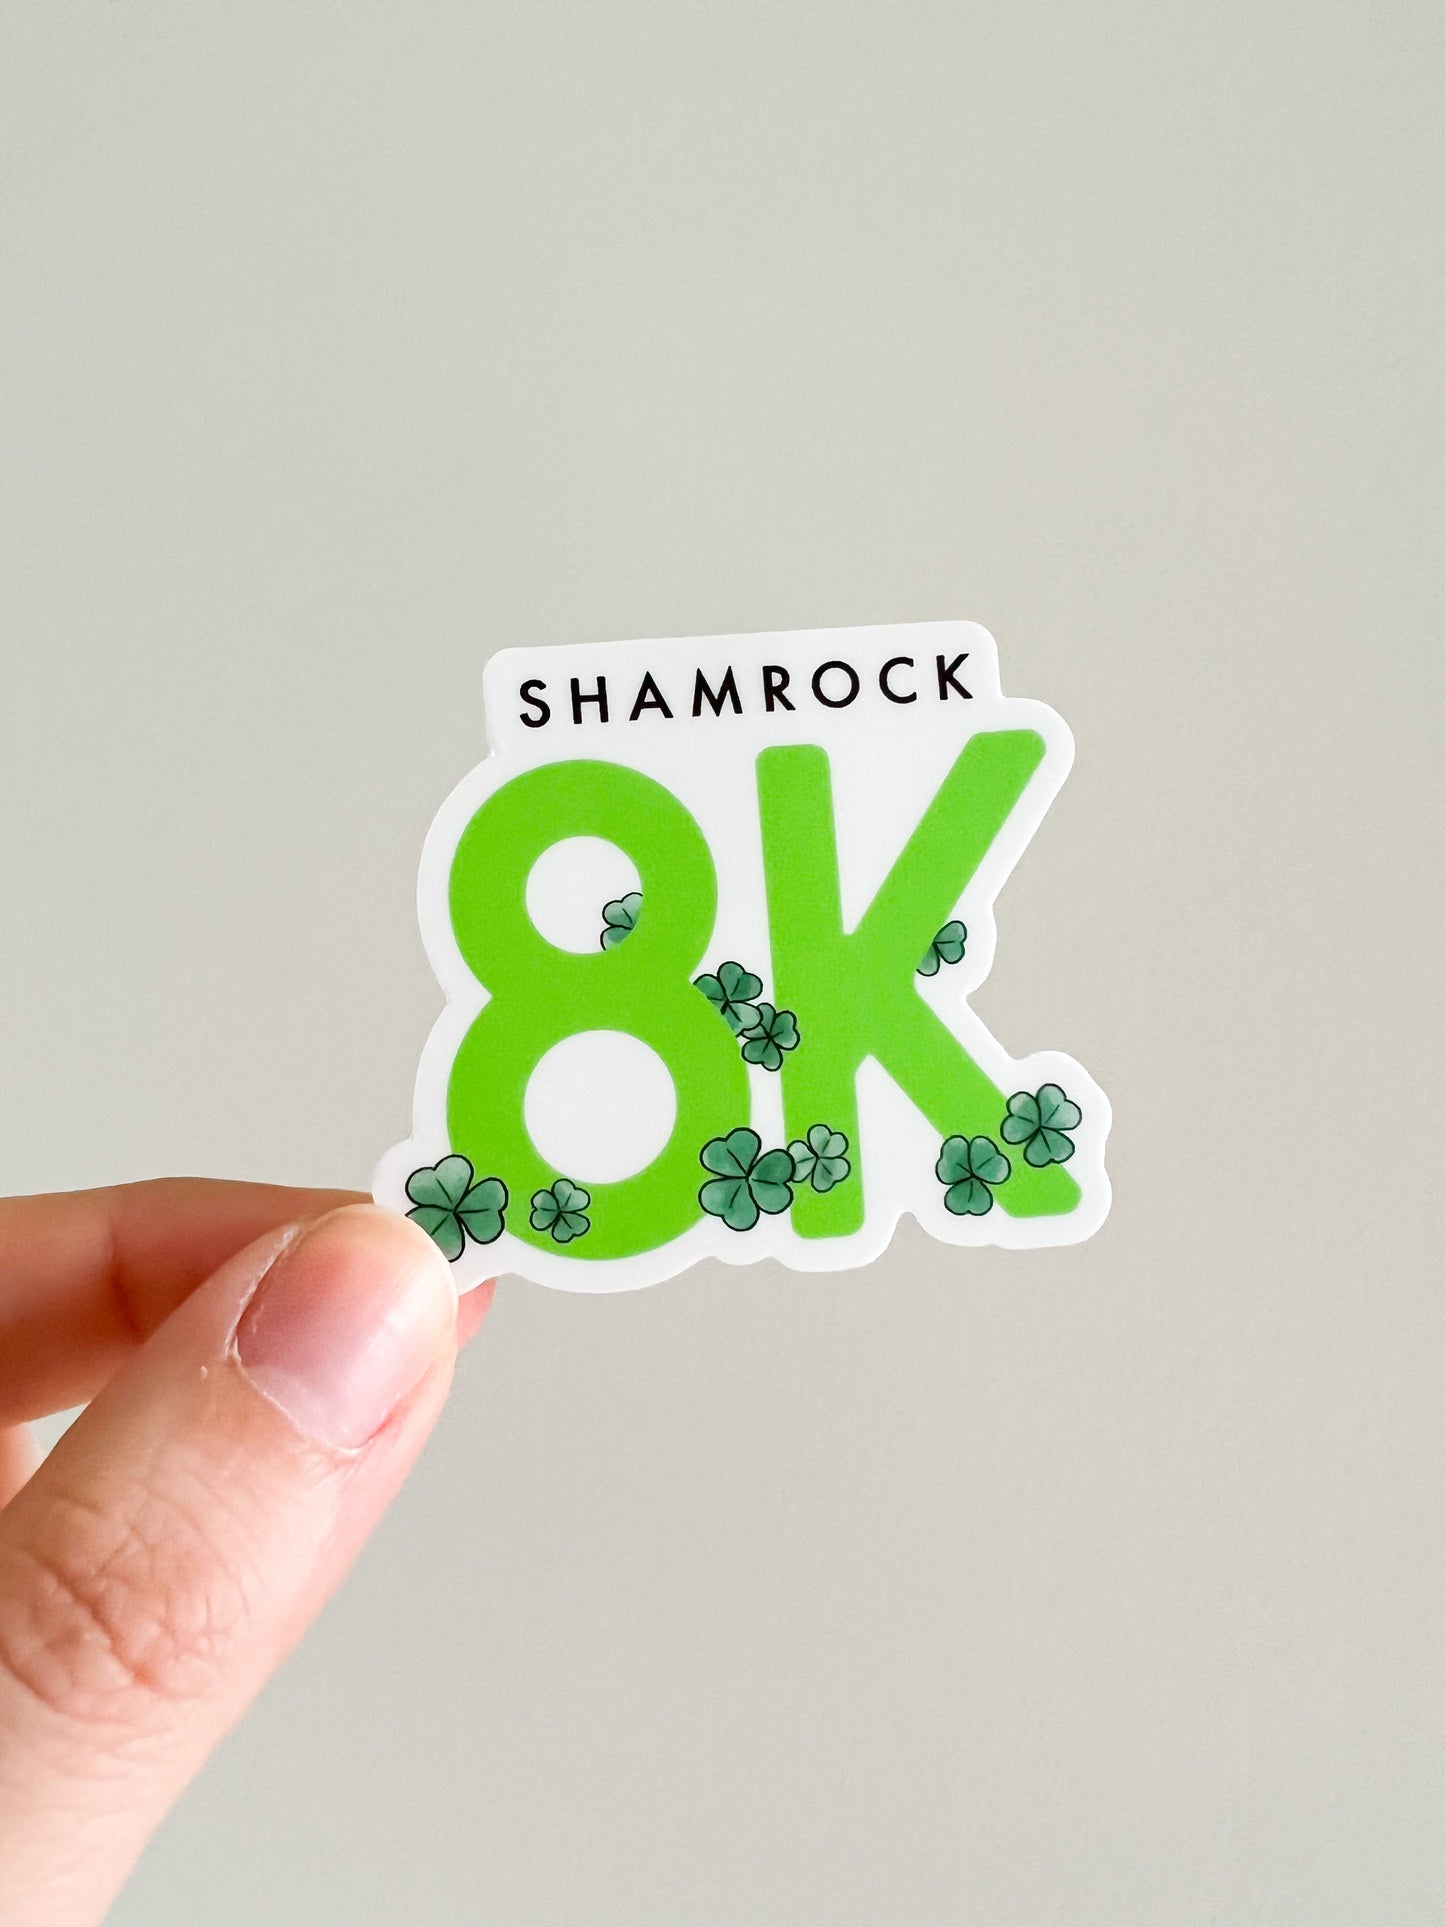 Shamrock 8k race sticker - Virginia Beach , runner sticker, race sticker